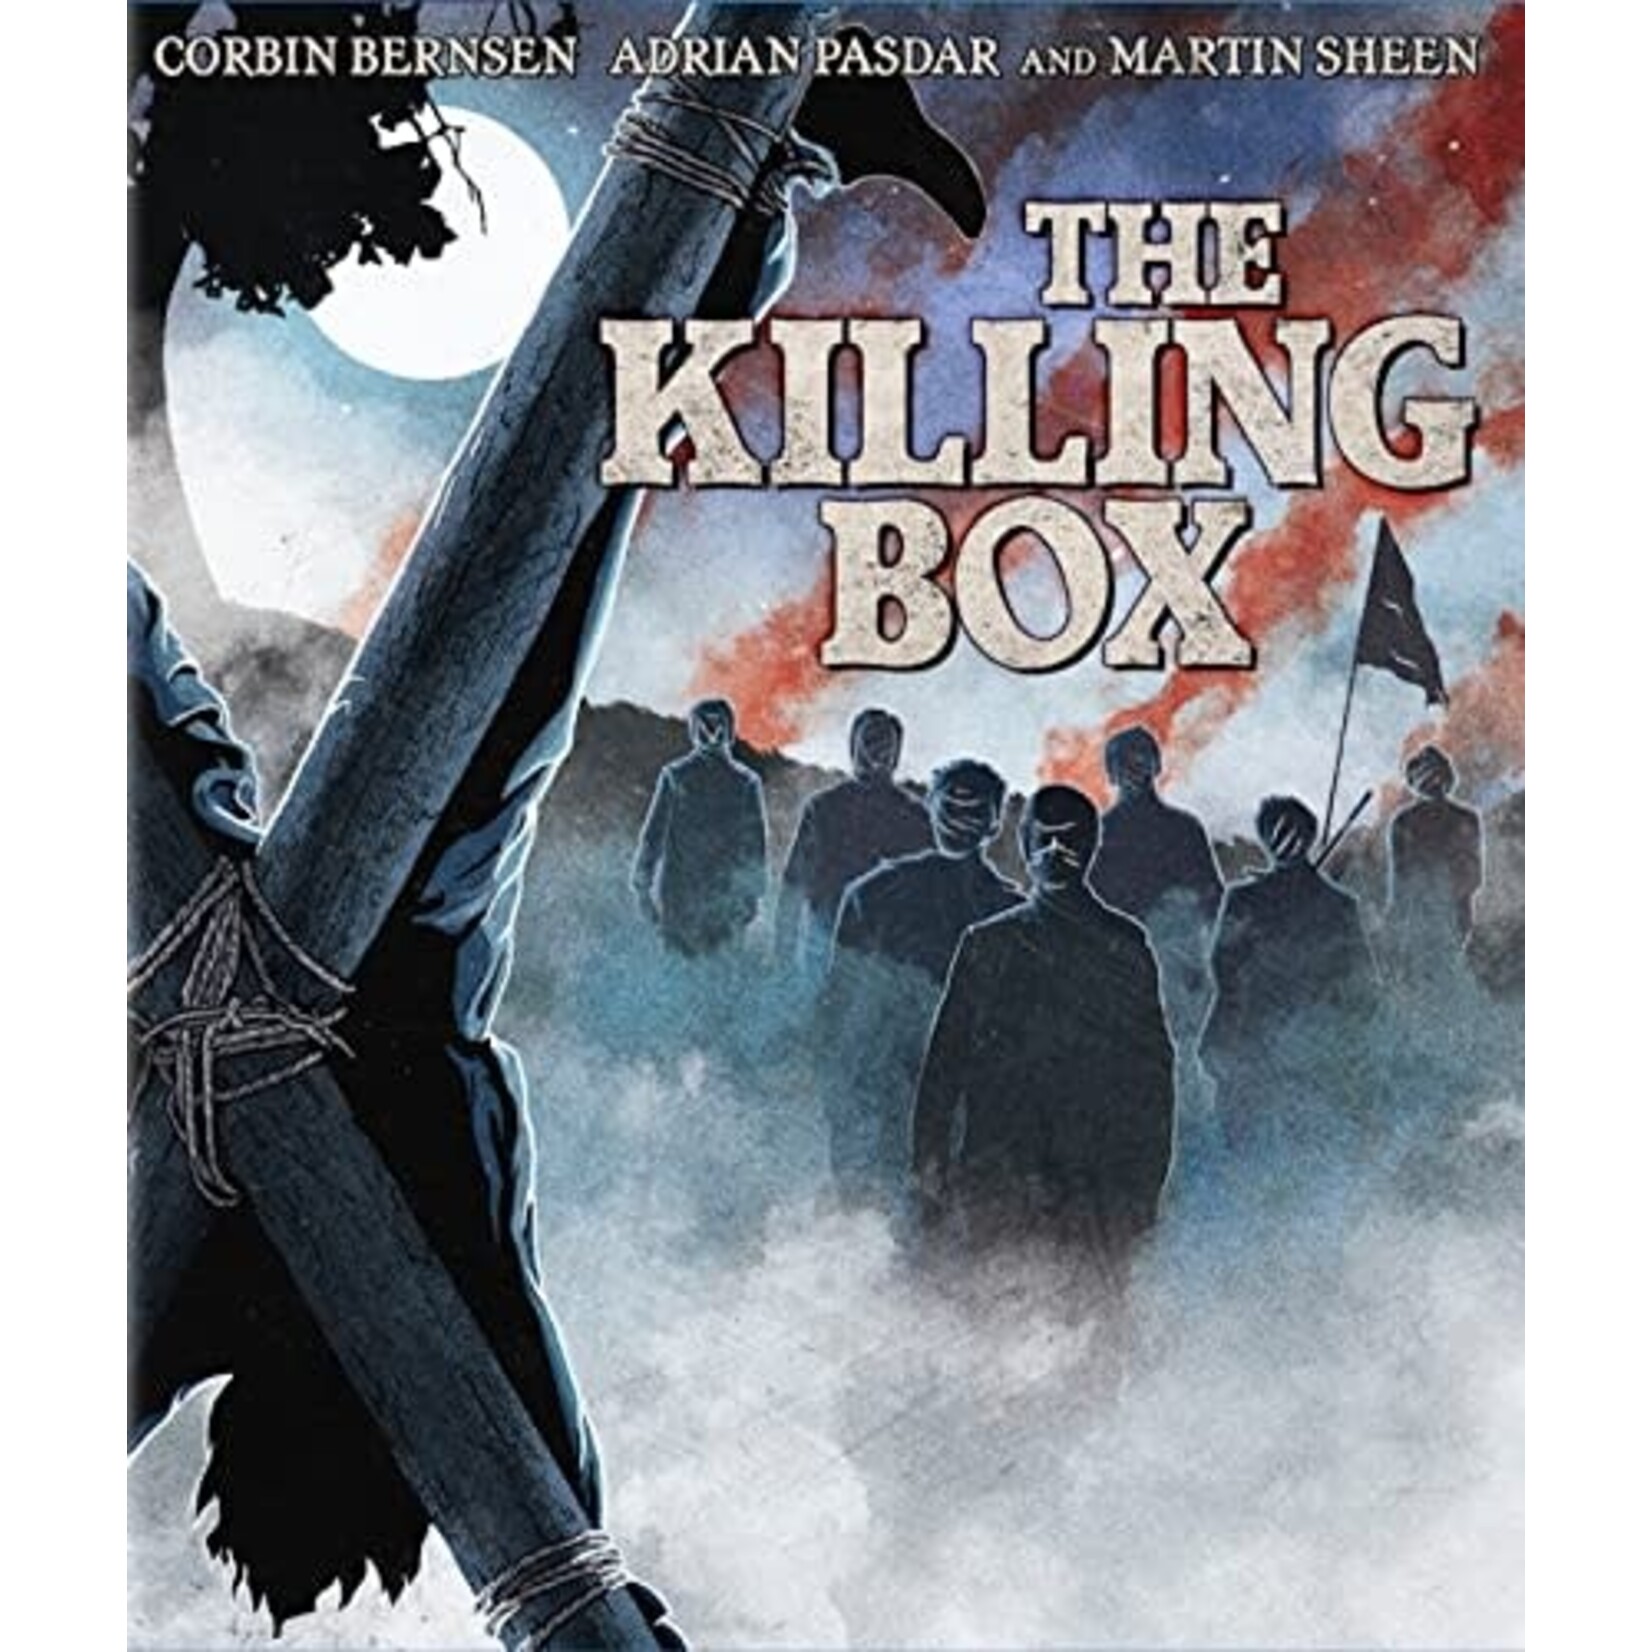 Killing Box (1993) [BRD]